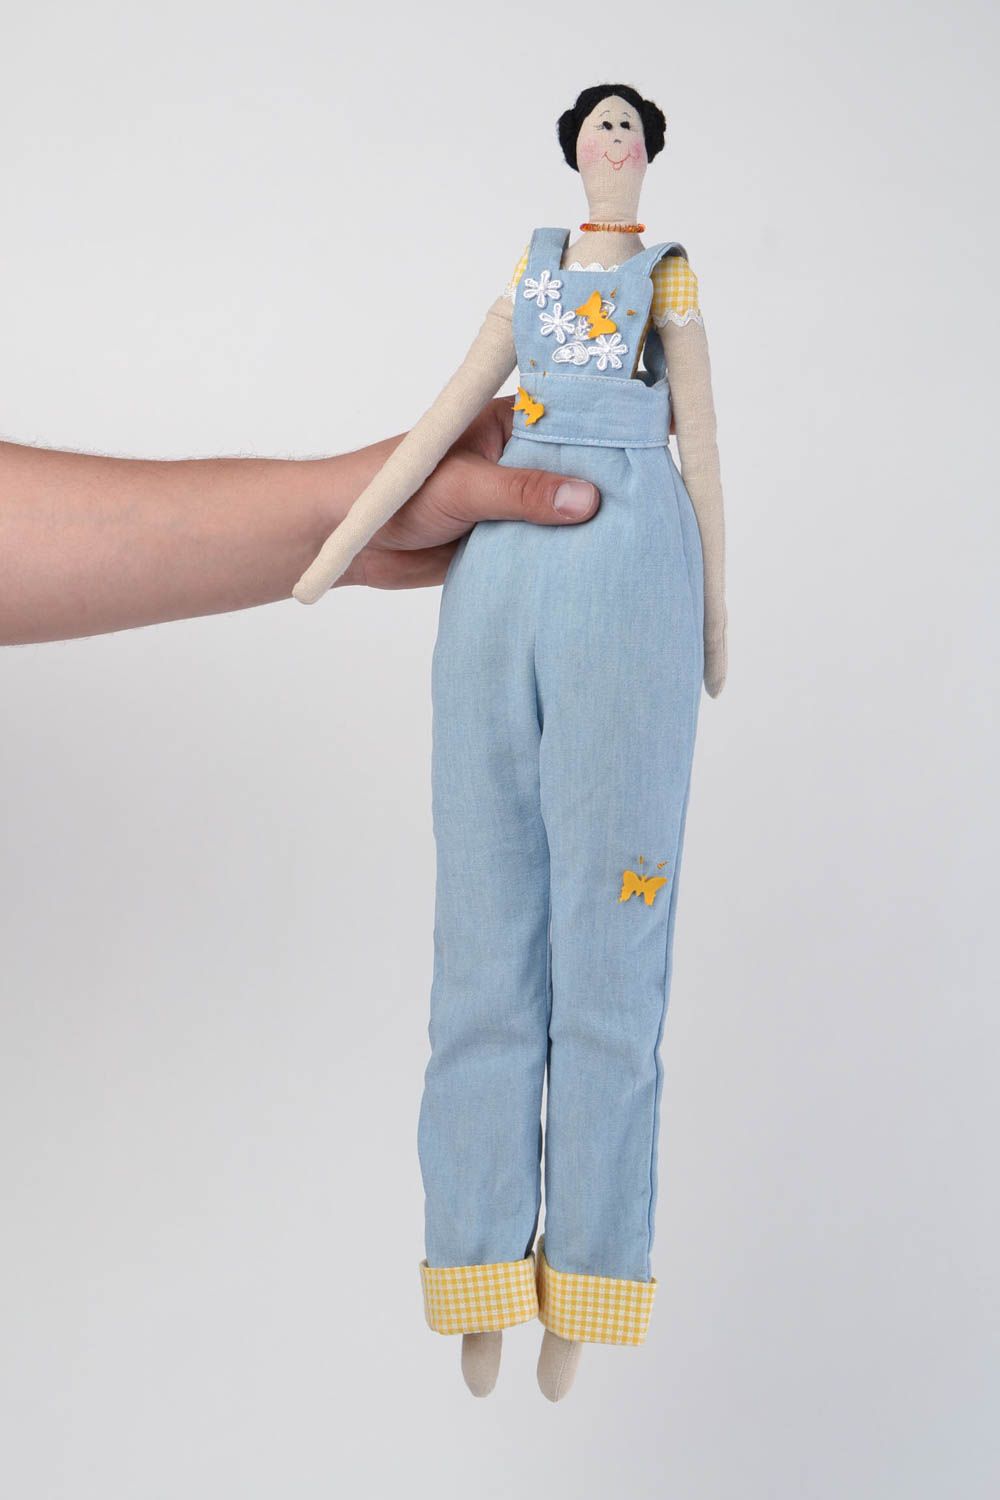 Авторская кукла из натуральных тканей игрушка ручной работы красивая детская фото 2